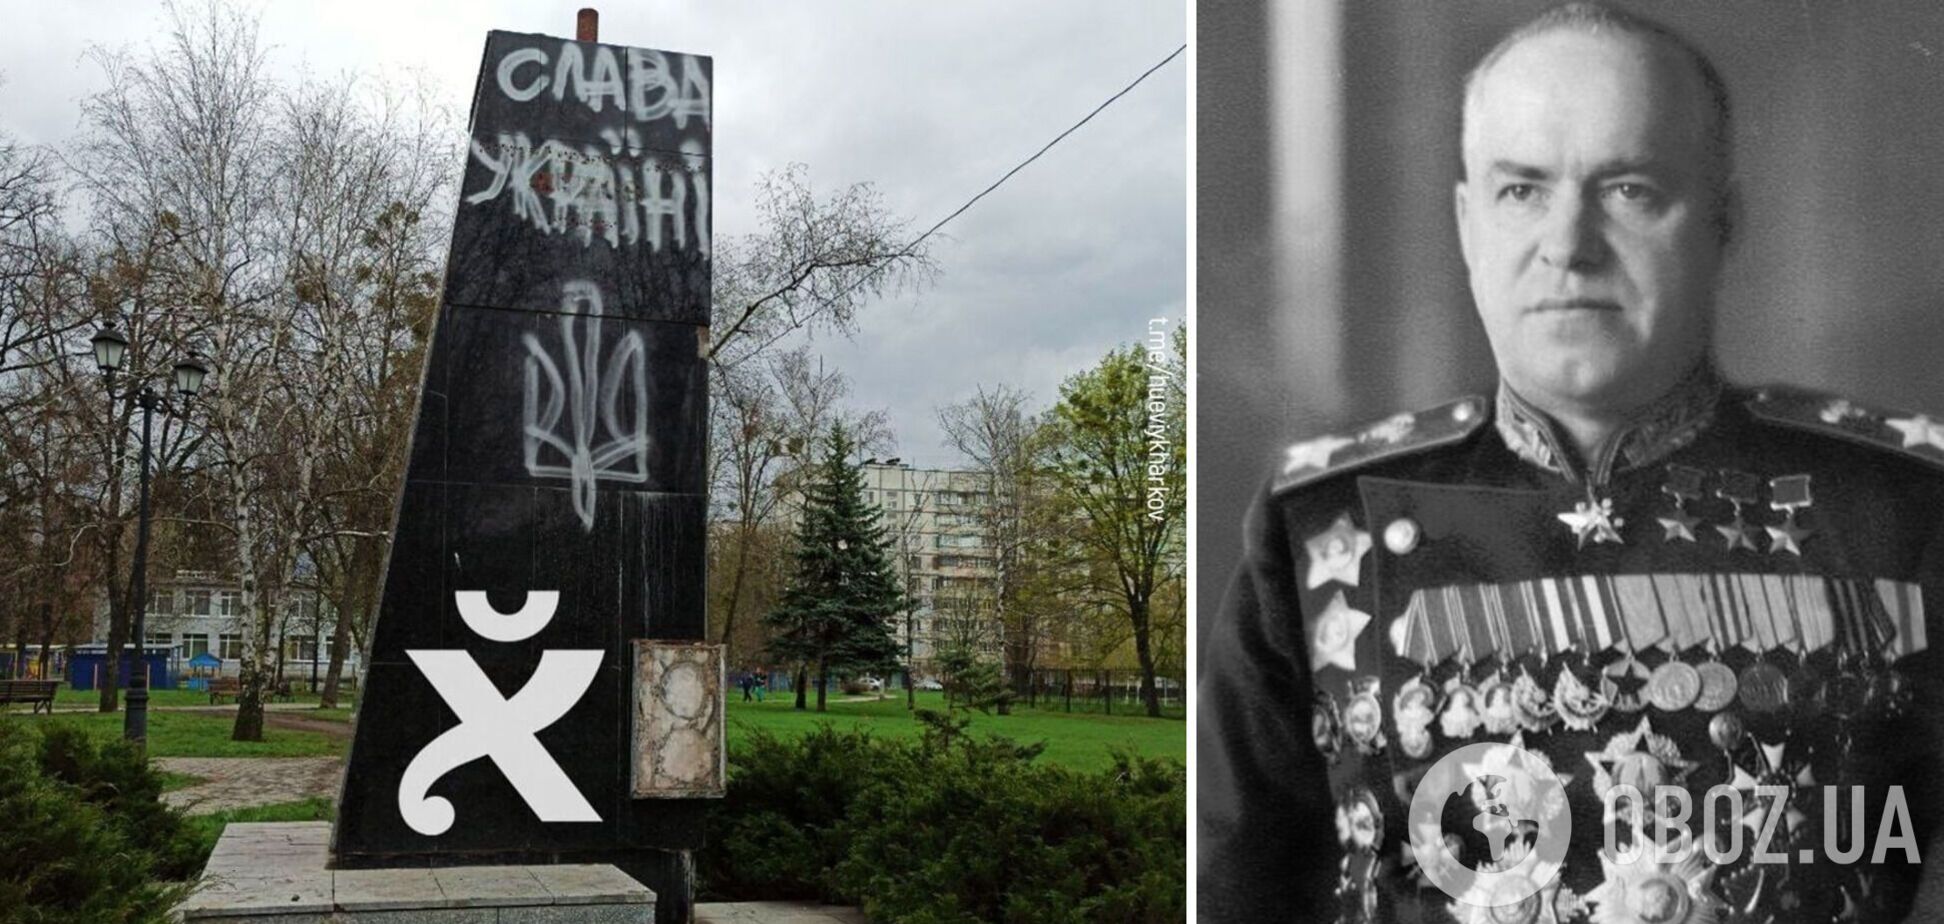 Сработали быстро: в Харькове демонтировали памятник маршалу Жукову. Фото и видео